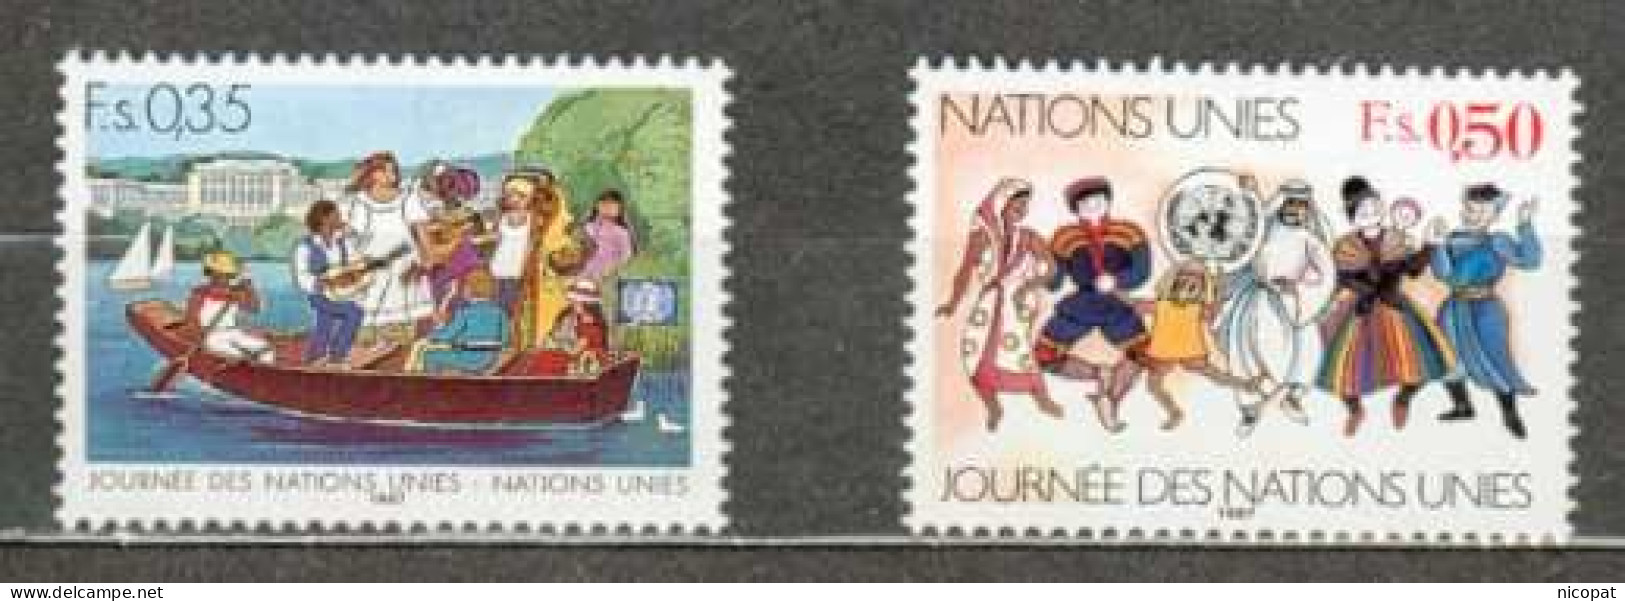 ONU GENEVE MNH ** 158-159 Journée Des Nations Unies Barque Sur Un Lac Costumes Nationaux Folklore - Ungebraucht